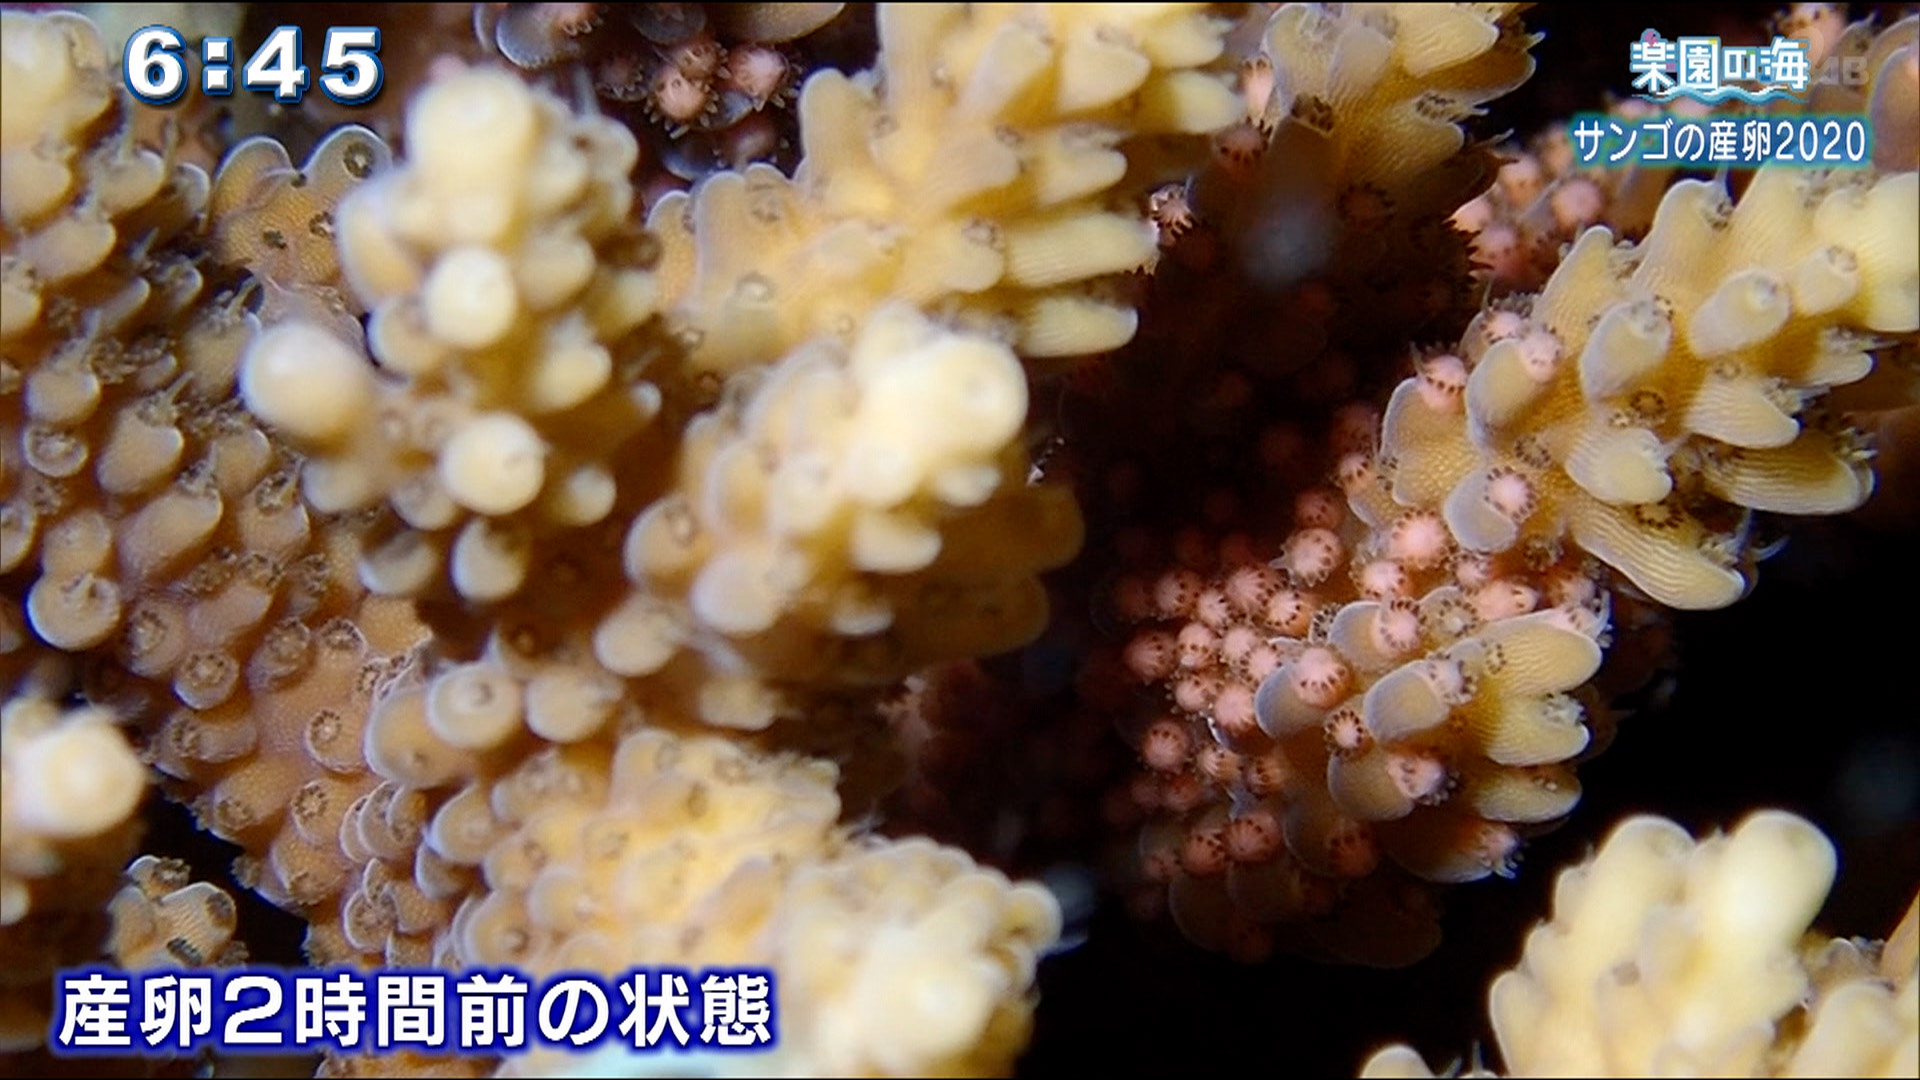 楽園の海 サンゴの産卵2020